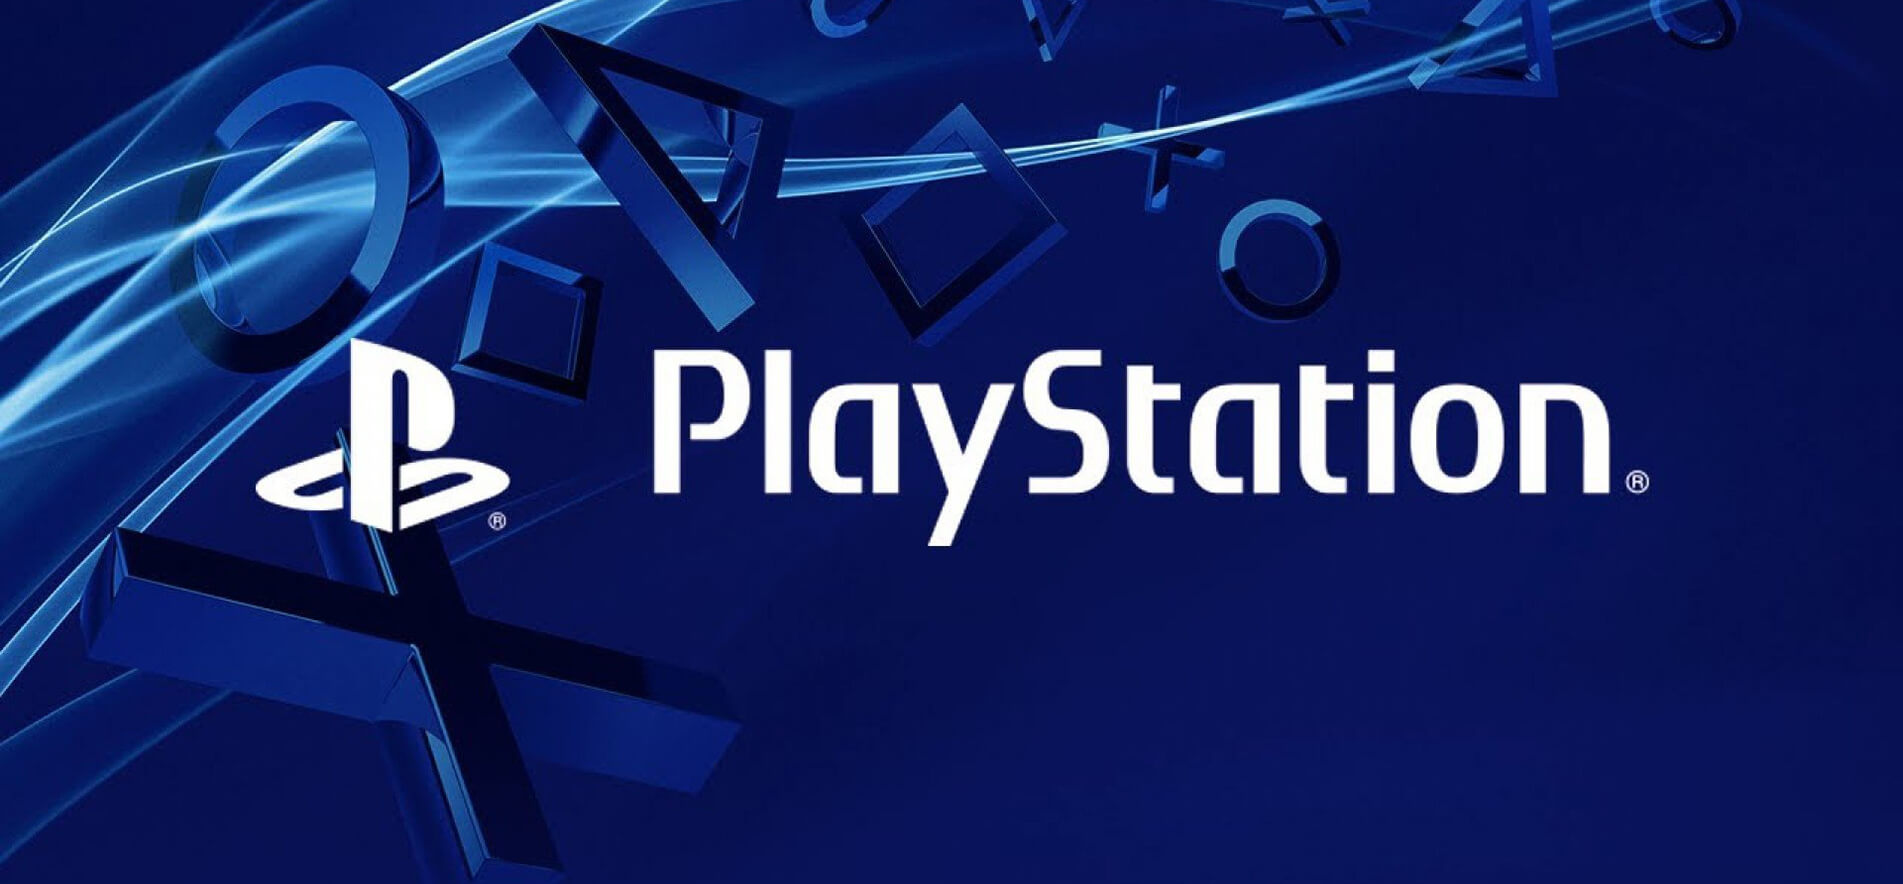 Официально! Playstation 5 выйдет в конце 2020 года (фото)